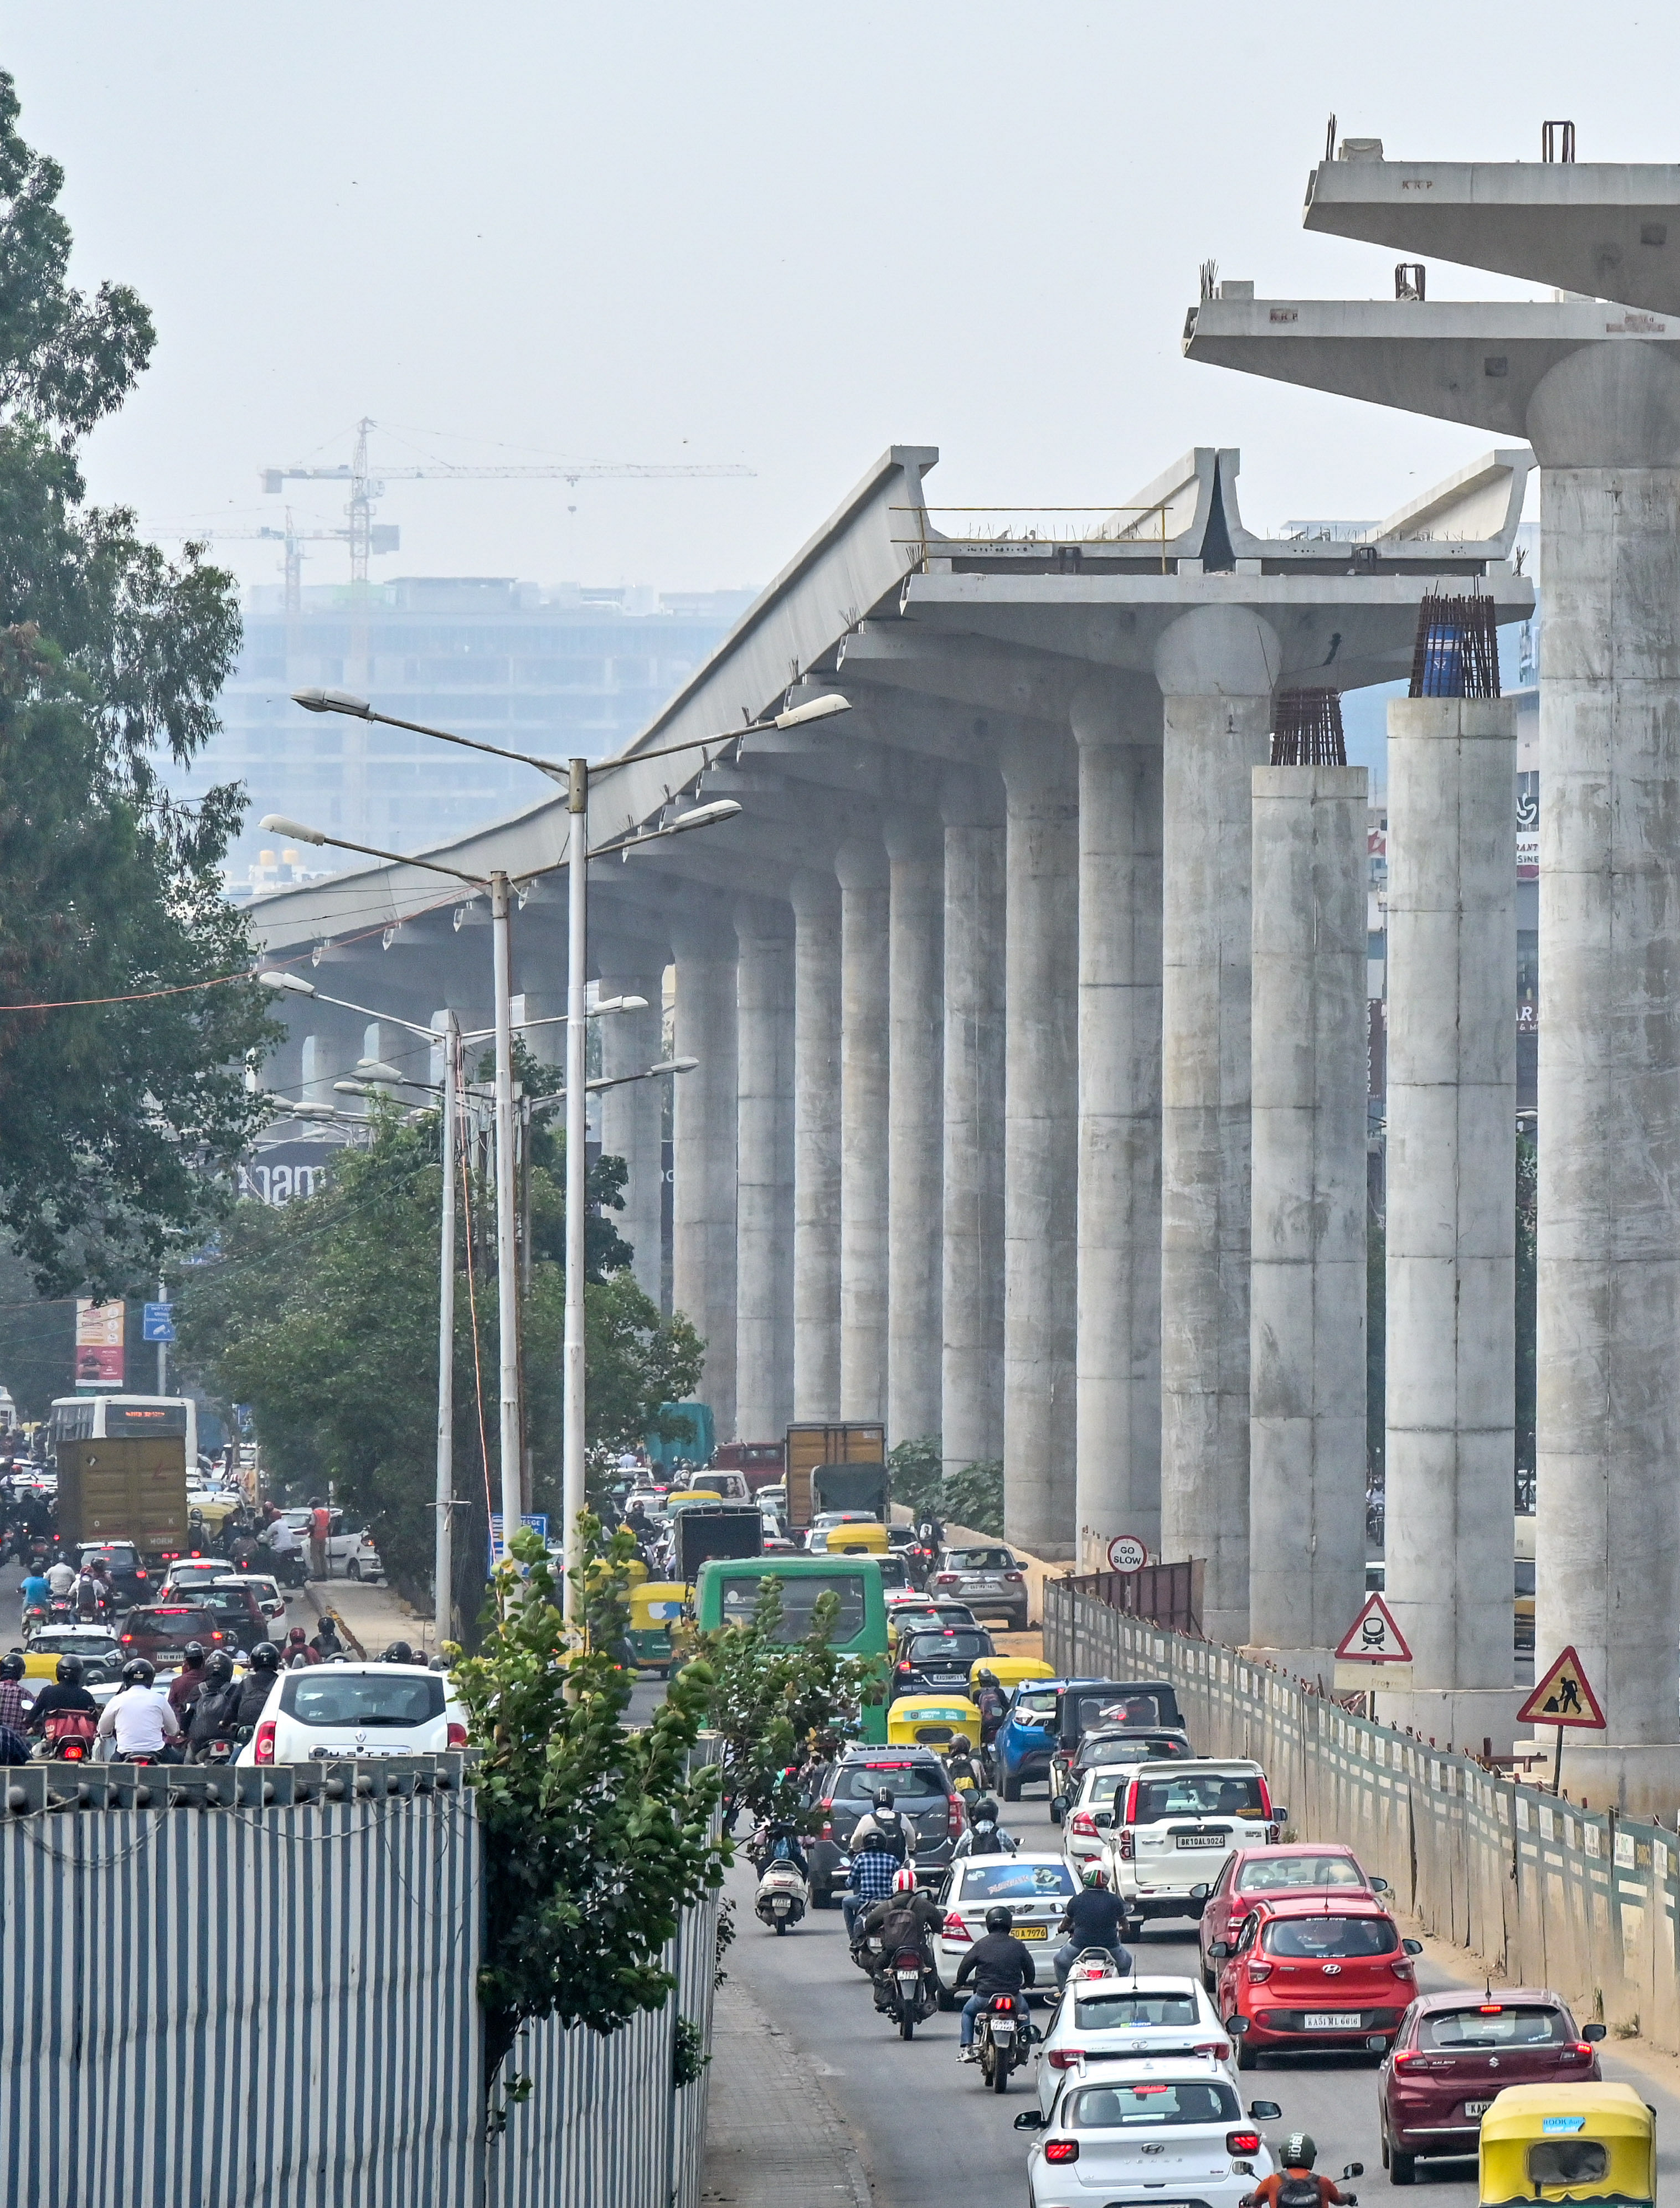 ಬೆಂಗಳೂರಿನ ಮಾರತ್‌ಹಳ್ಳಿ ಹೊರವರ್ತುಲ ರಸ್ತೆಯಲ್ಲಿ ನಿರ್ಮಾಣ ಹಂತದಲ್ಲಿರುವ ನಮ್ಮ ಮೆಟ್ರೊ ನೀಲಿ ಮಾರ್ಗ